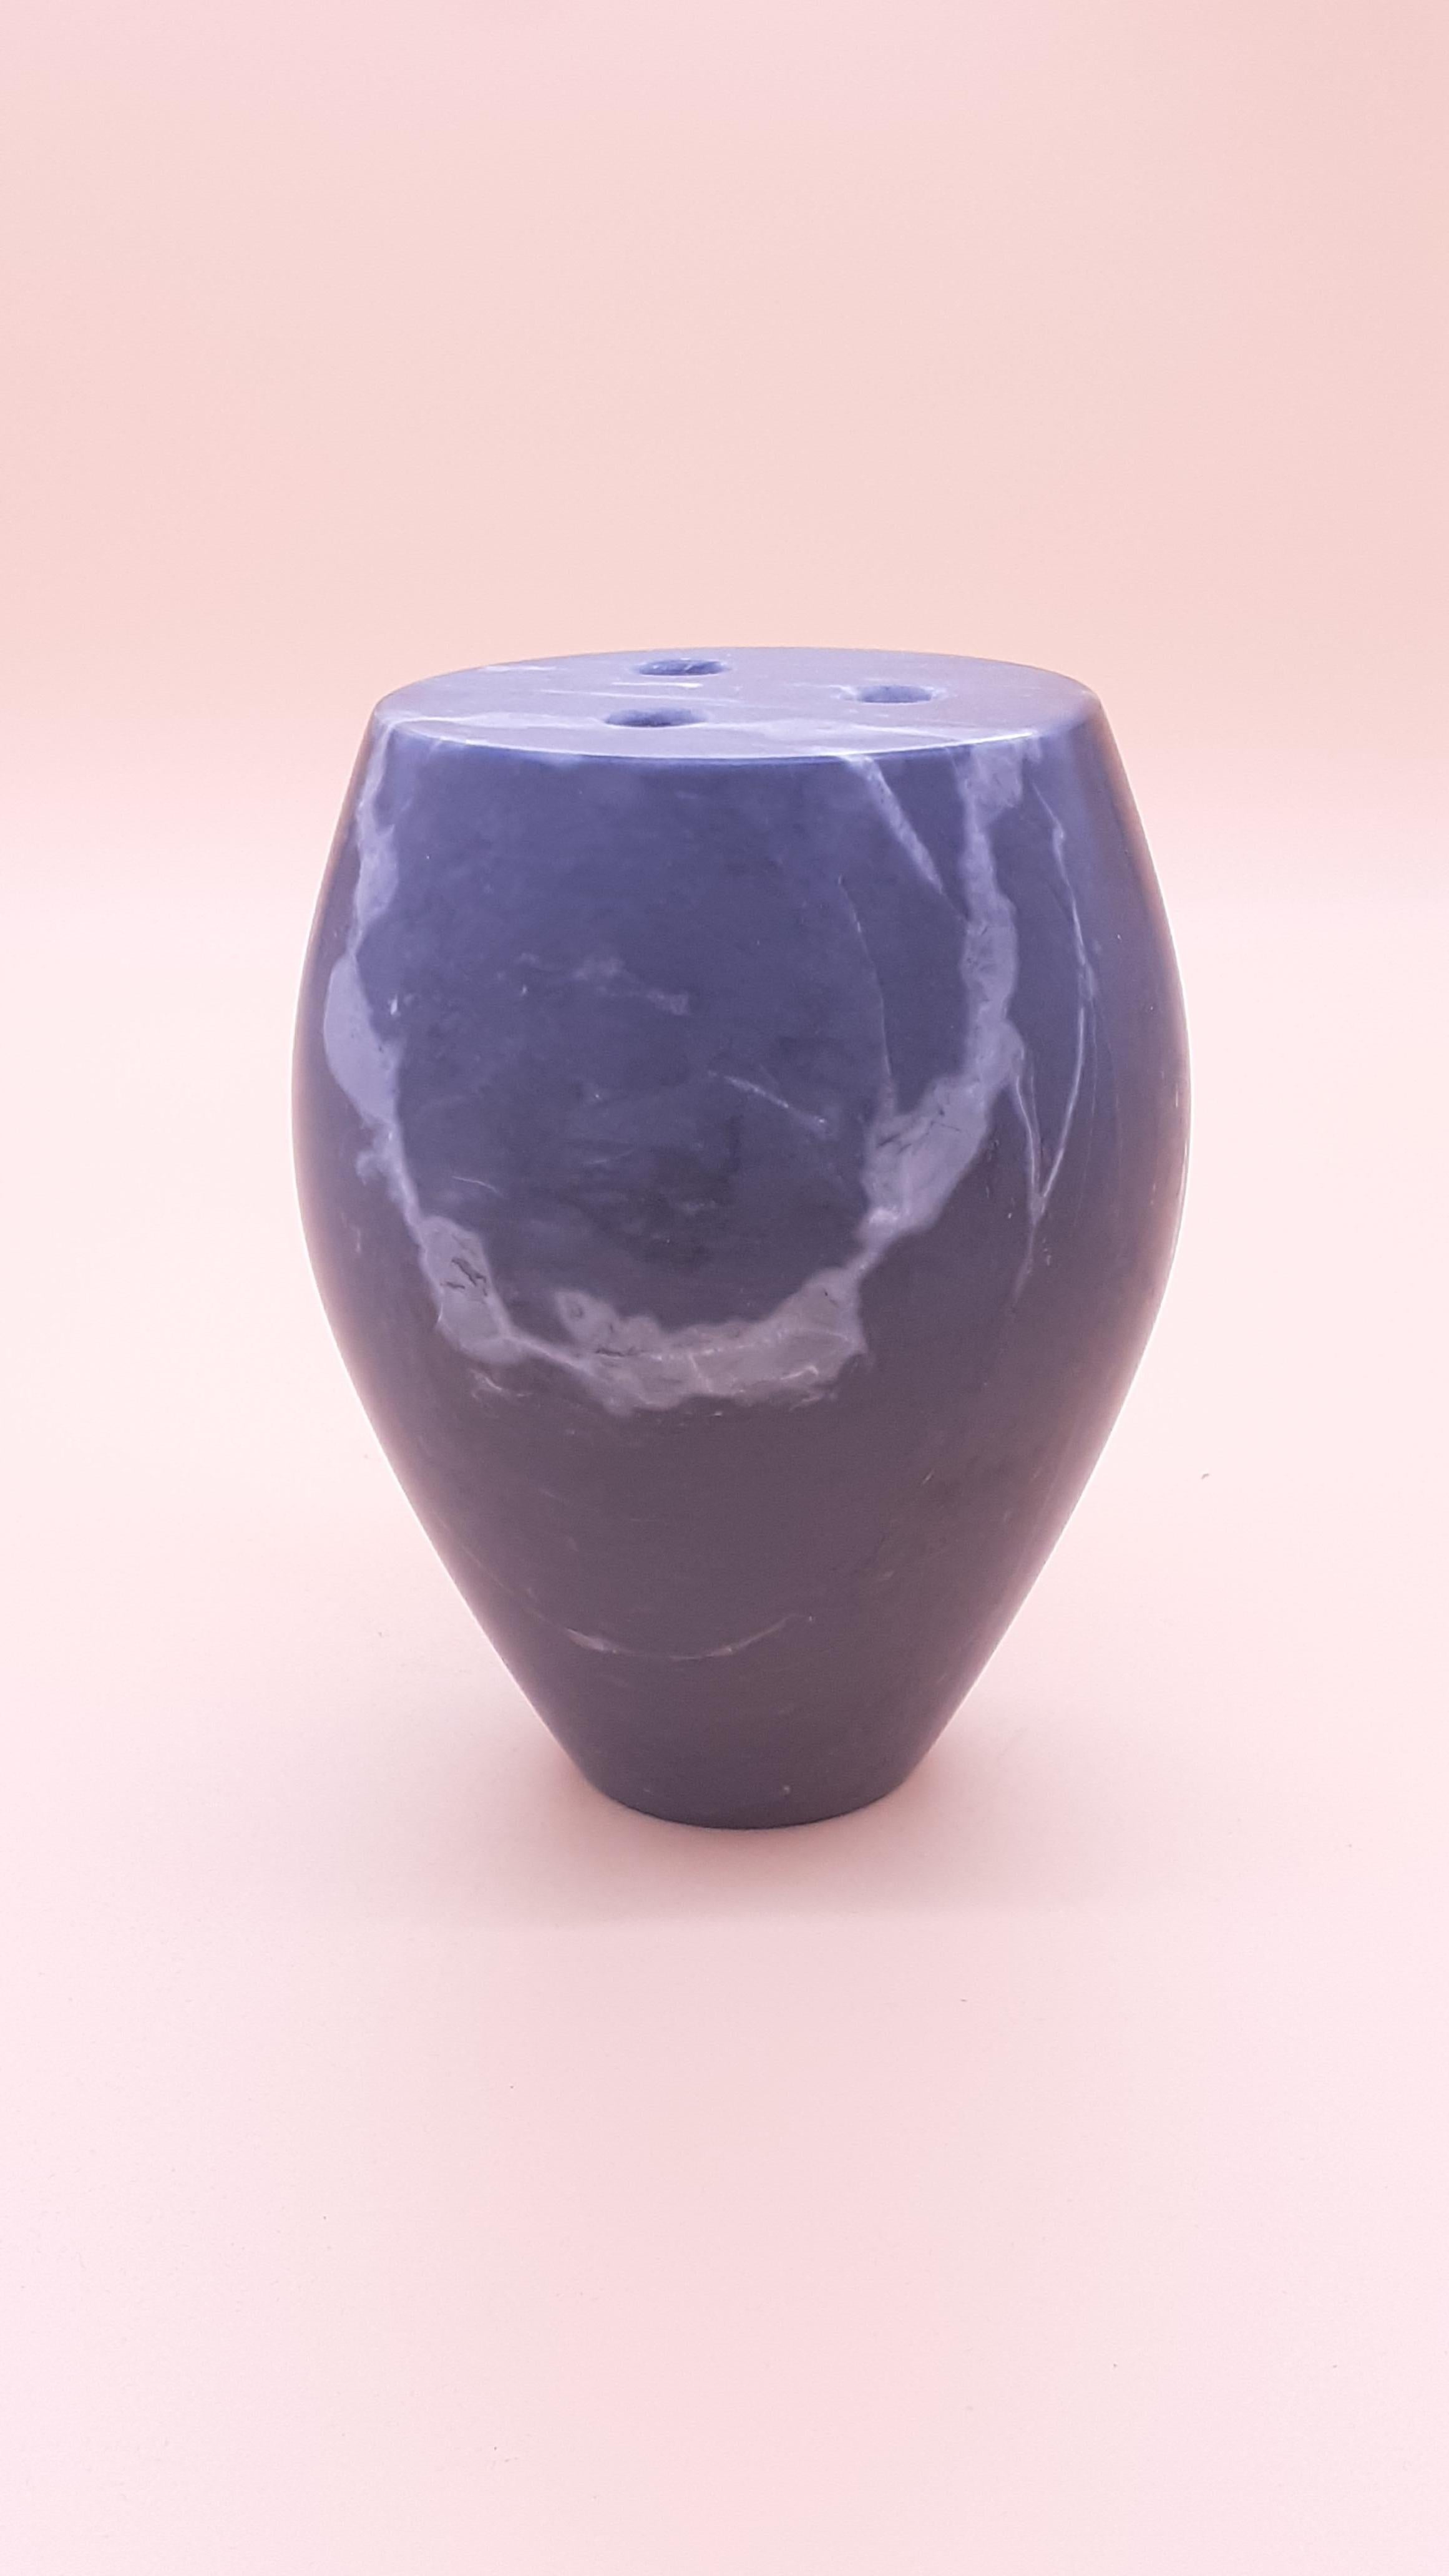 Vase en marbre conçu par Feix & Merlin.

Taille : Diamètre 9 x hauteur 14
Matériaux : Calacatta Carrara
Conçu par : Feix & Merlin.